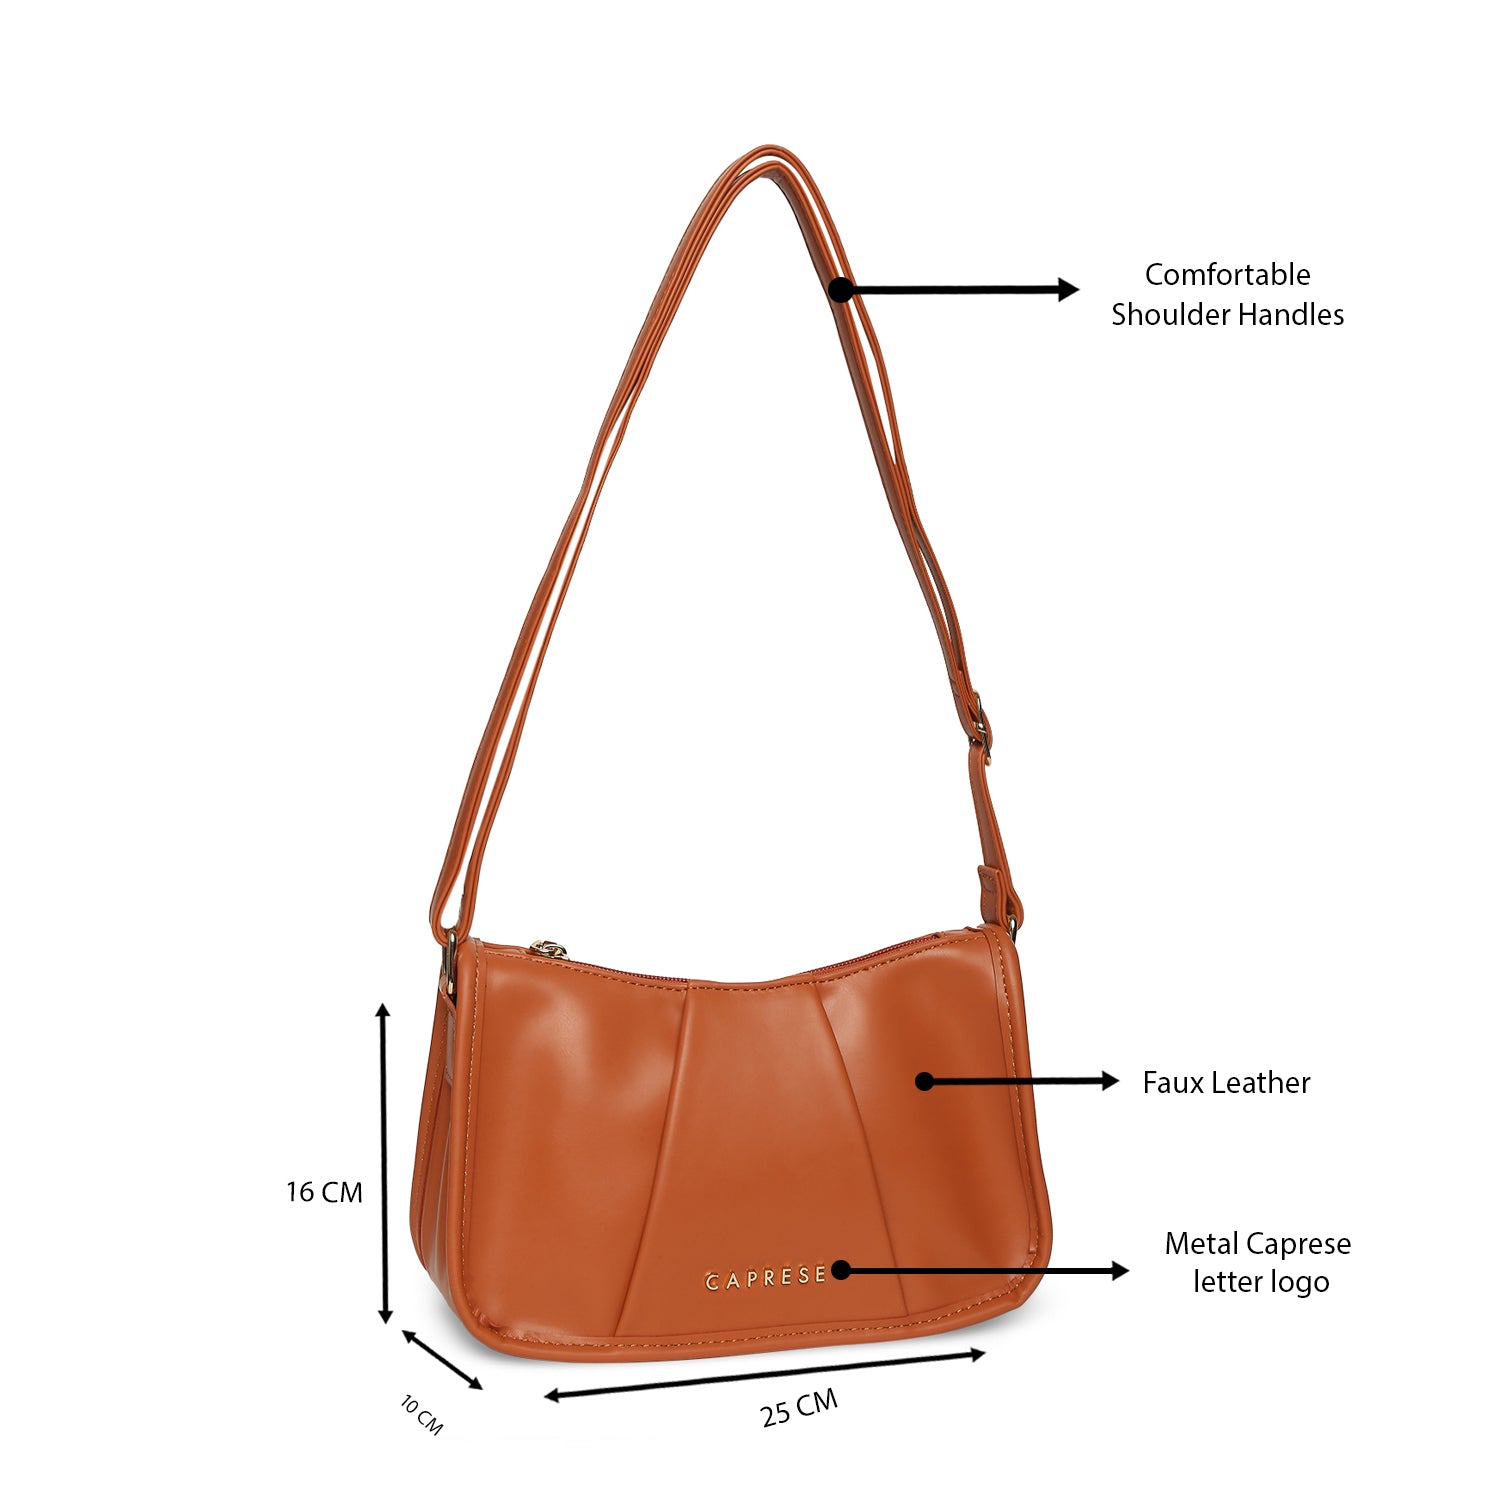 Buy Caprese Women's Satchel handbag at Amazon.in